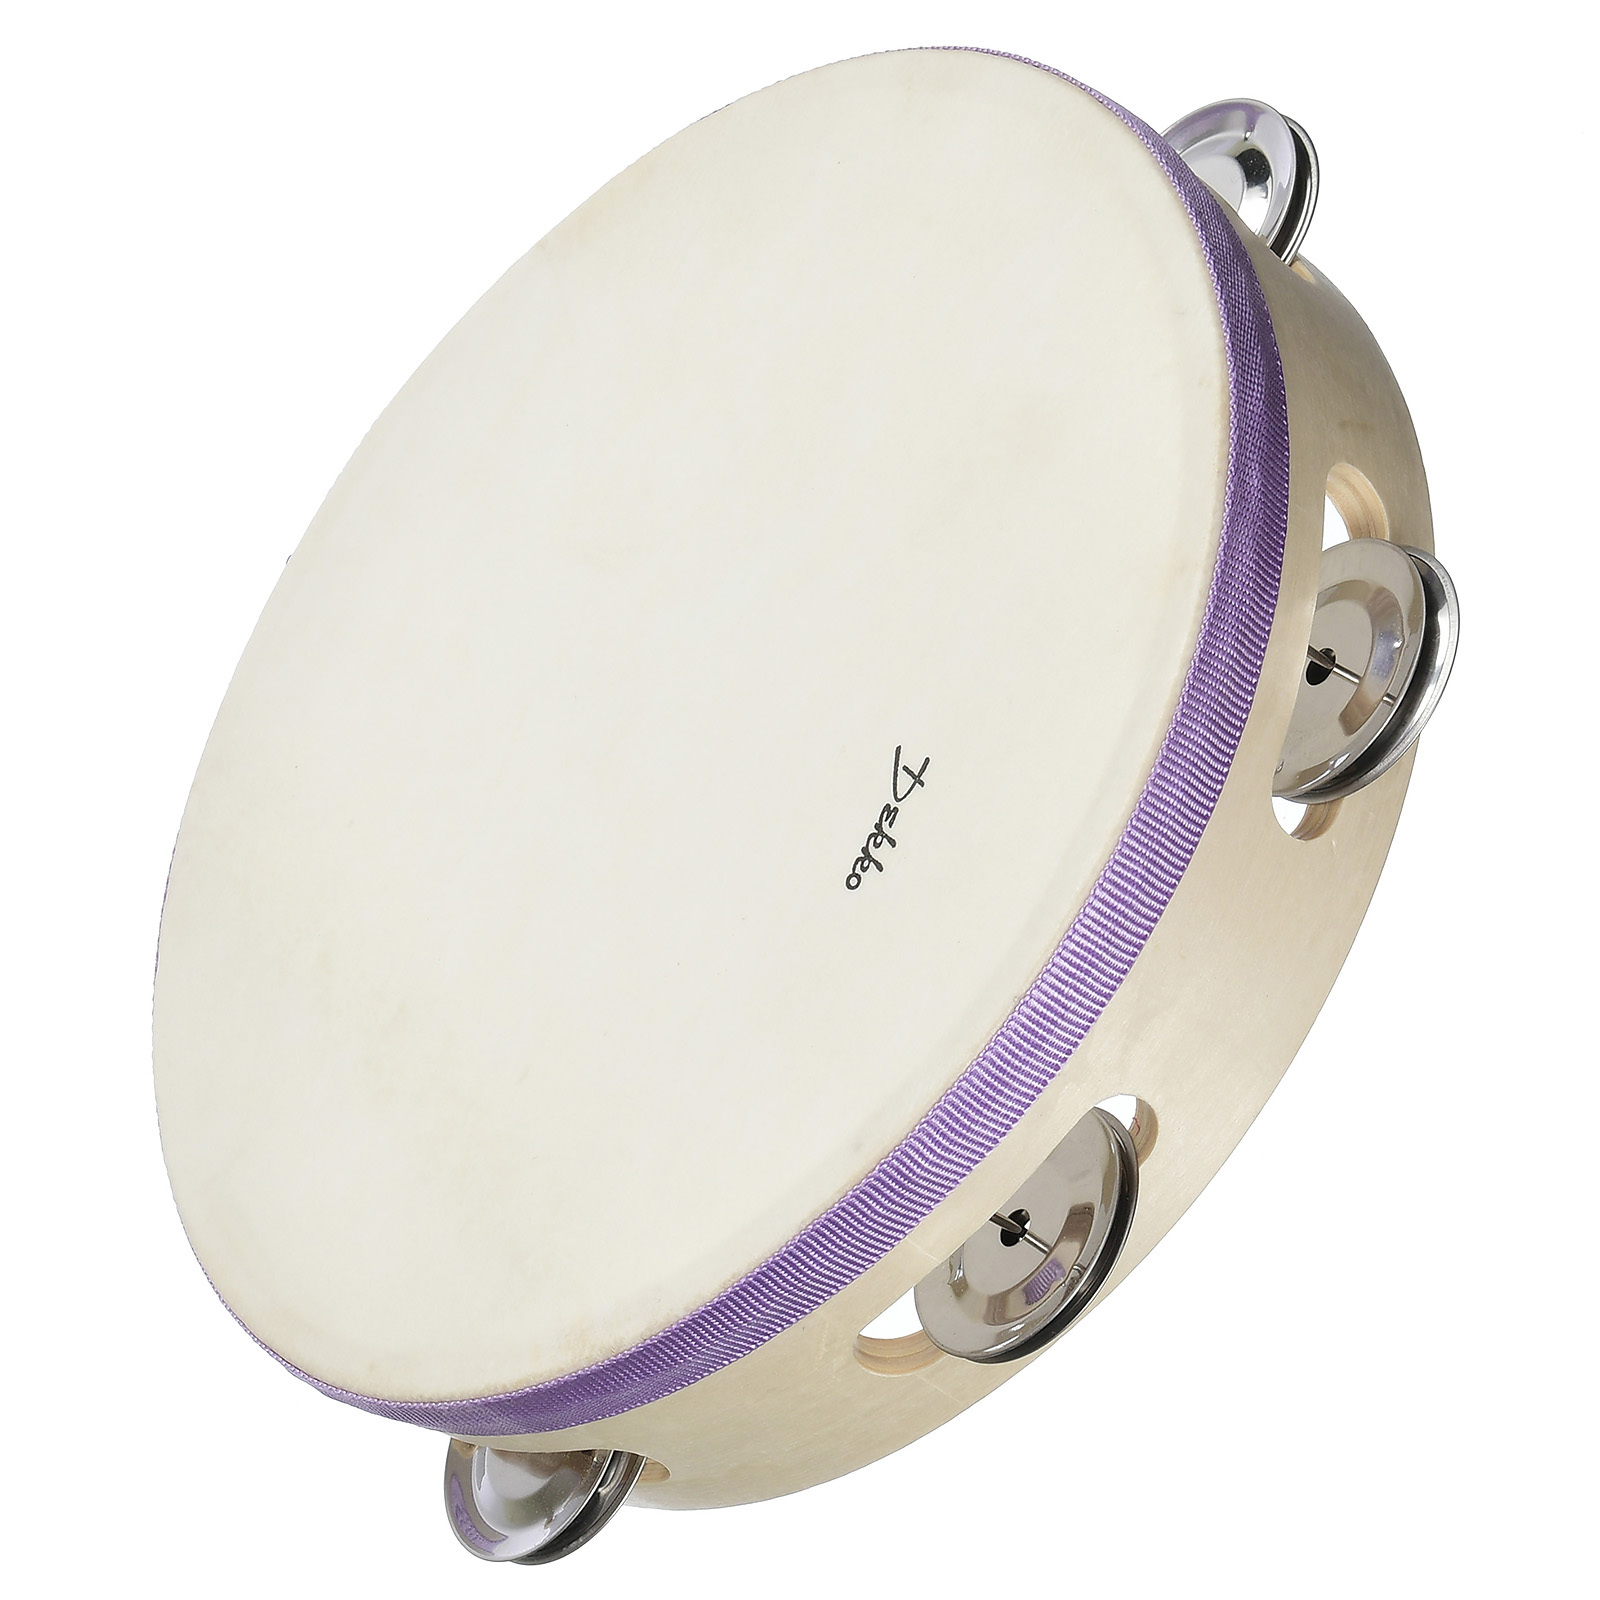 Dekko Ath8-6 Pl - Бубен деревянный корпус, диаметр 20 см, Фиолетовый Кант